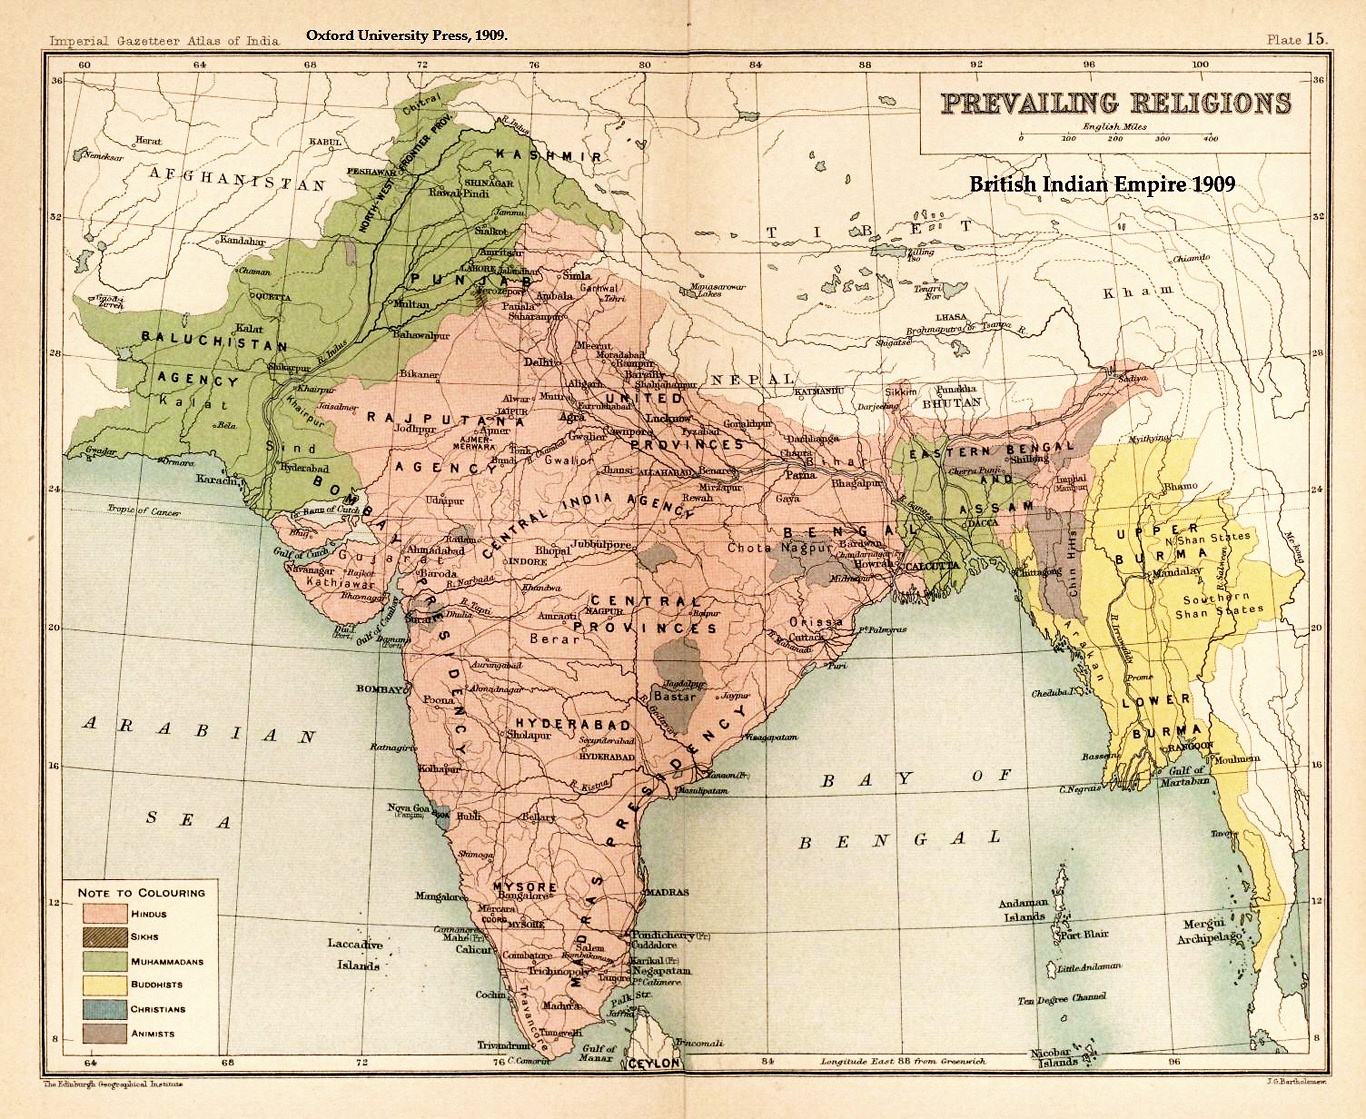 Religiösa majoriteter i Brittiska Indien enligt en folkräkning 1901. Delningen av territoriet kom i grova drag att följa var det var hinduistisk
befolkningsmajoritet (markerat i rosa) respektive muslimsk (grönt).